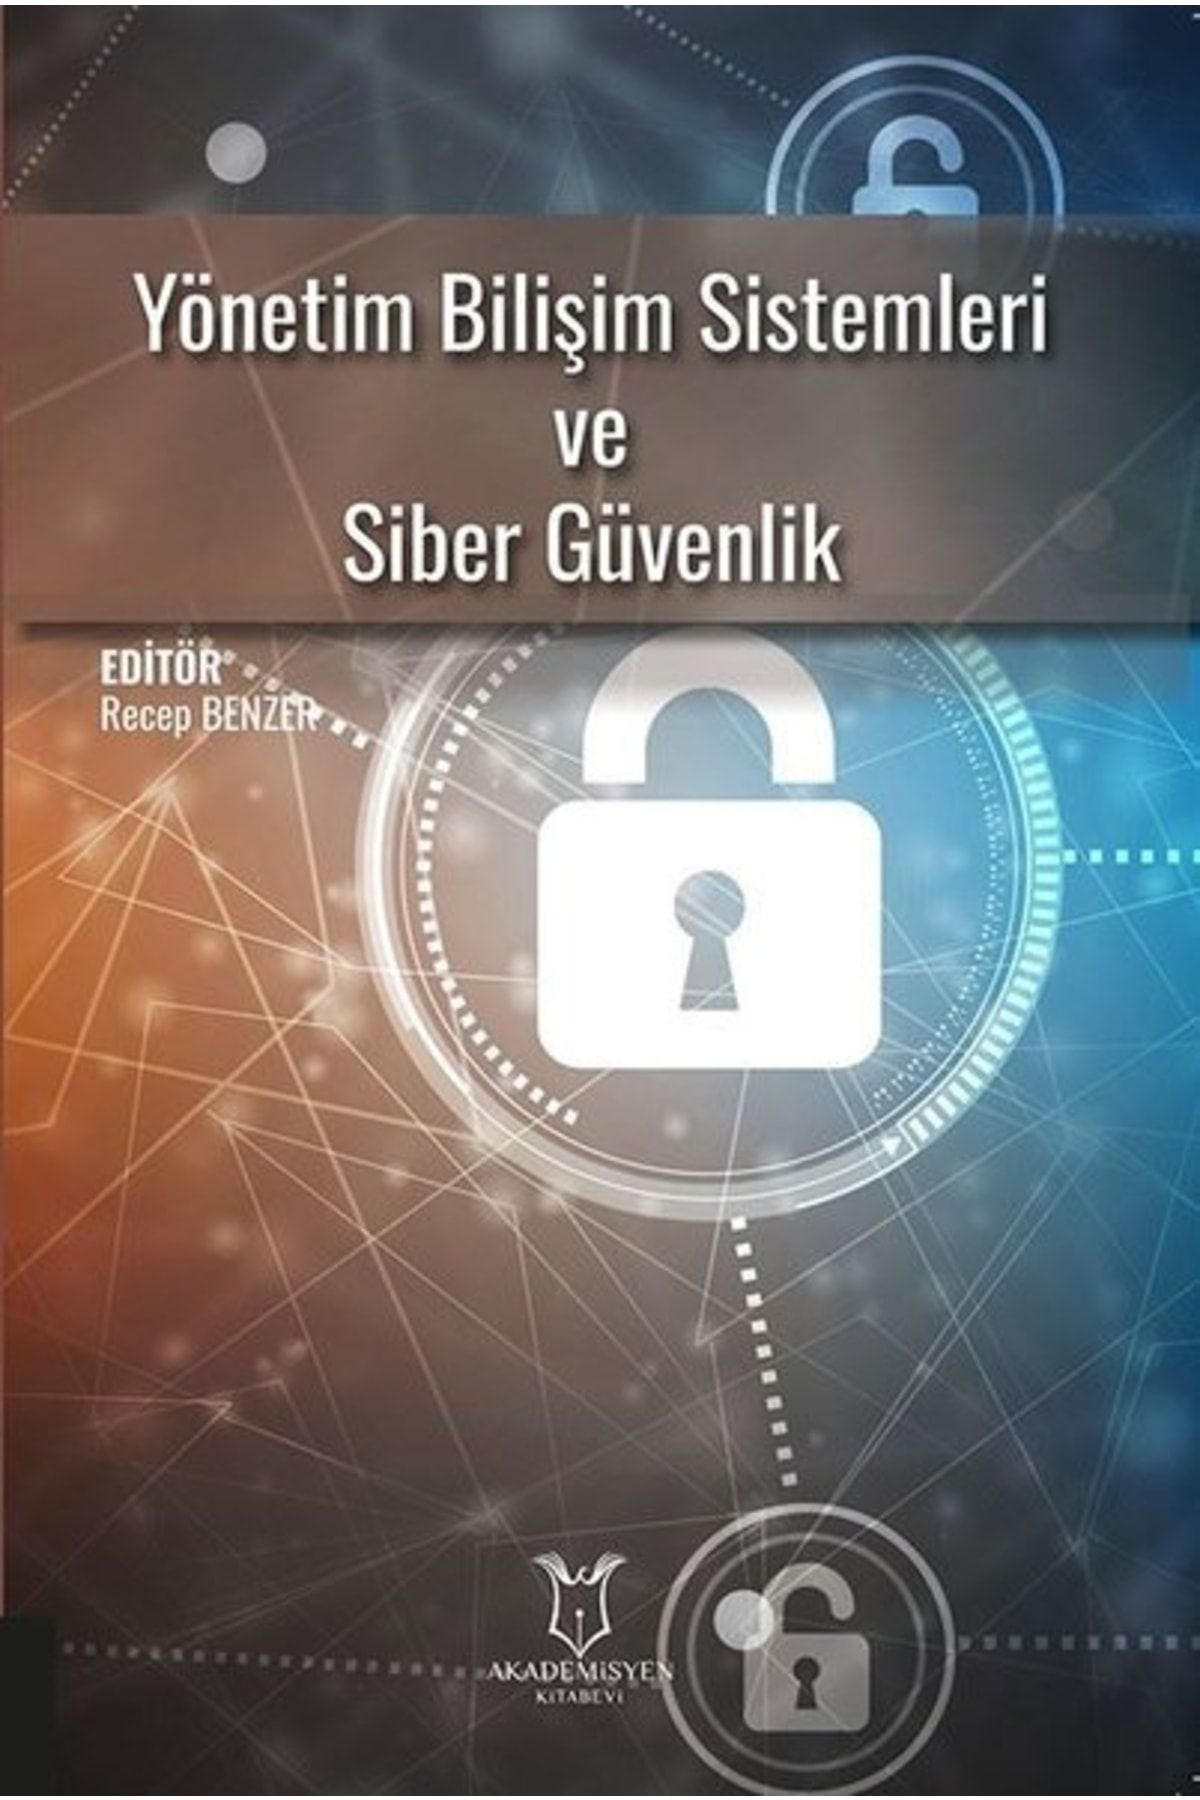 Akademisyen Kitabevi Yönetim Bilişim Sistemleri Ve Siber Güvenlik